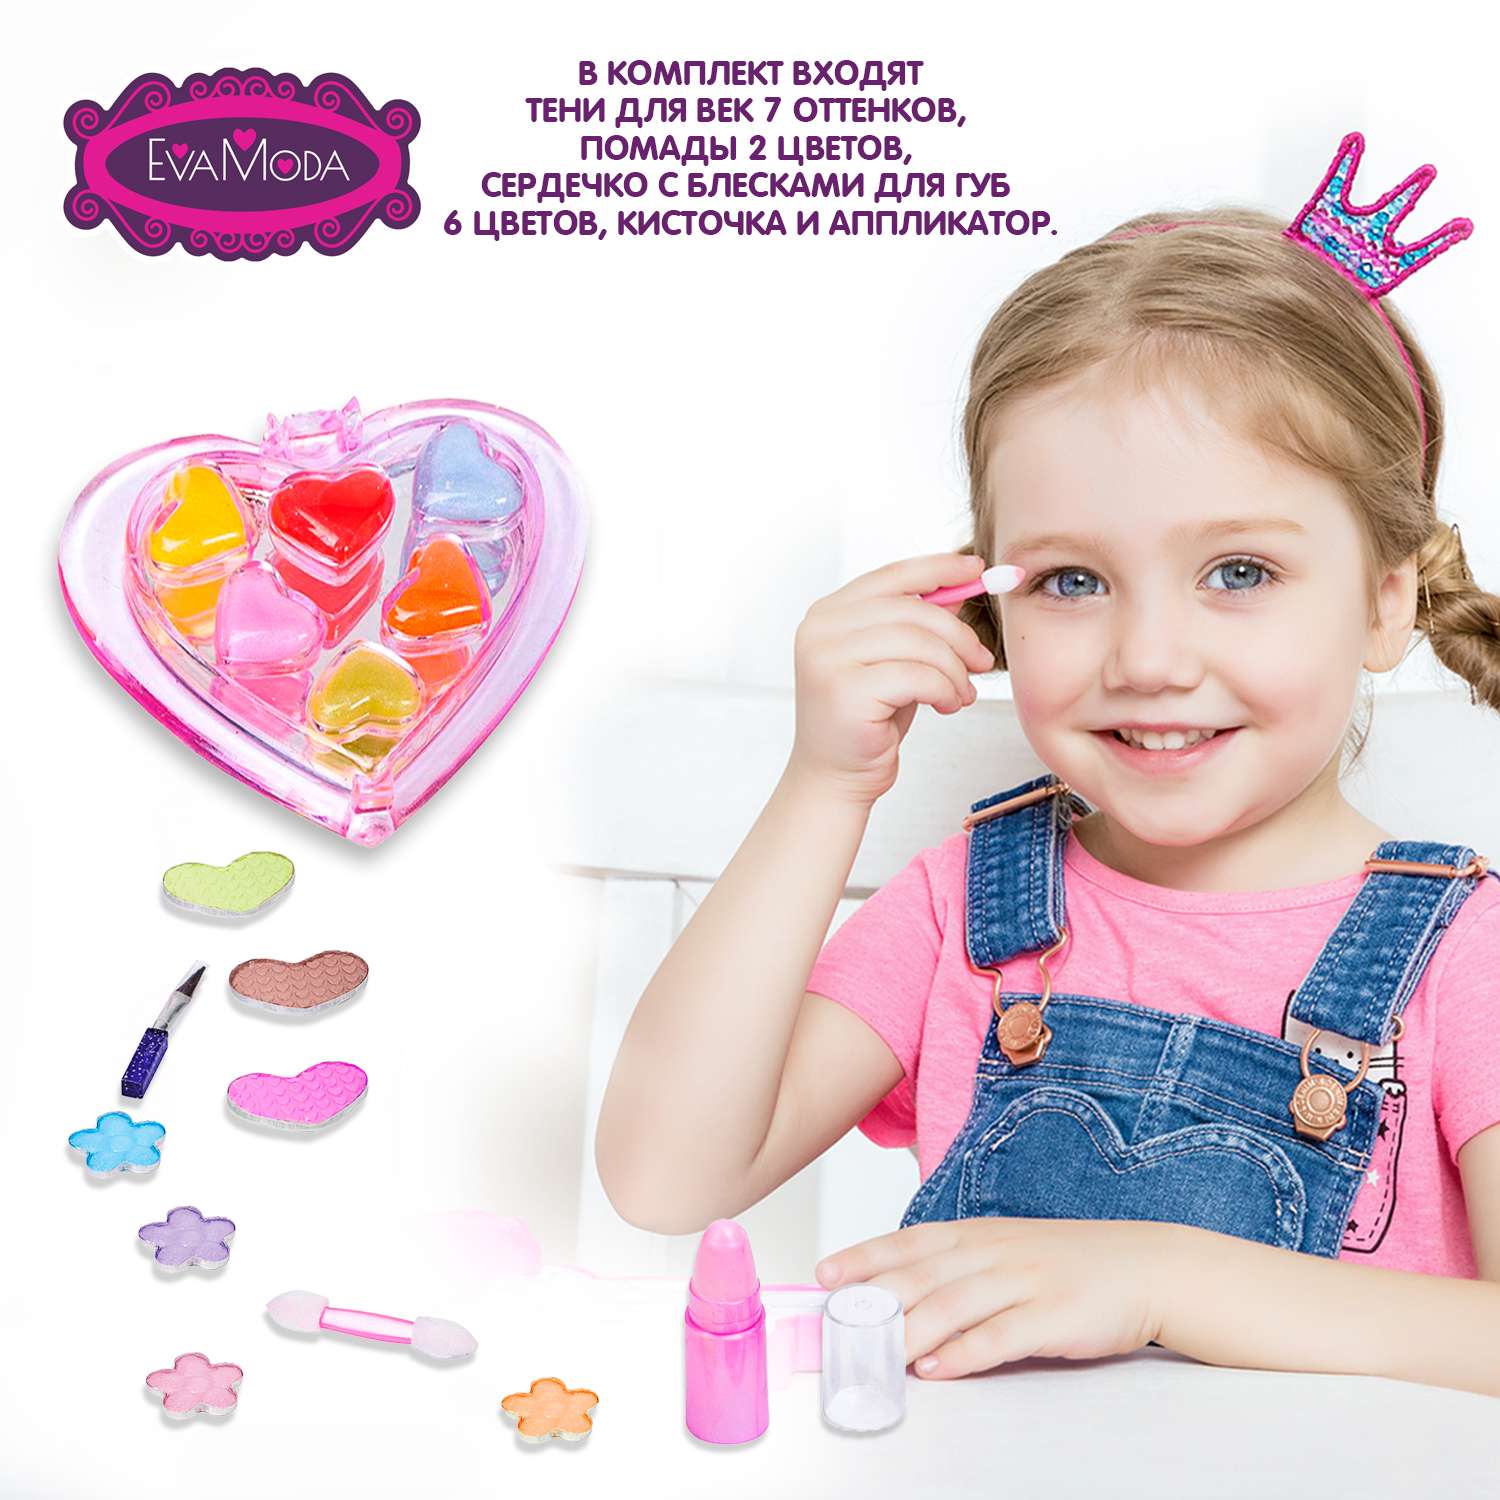 Детская декоративная косметика BONDIBON серия Eva Moda Прямоугольный кейс - фото 3